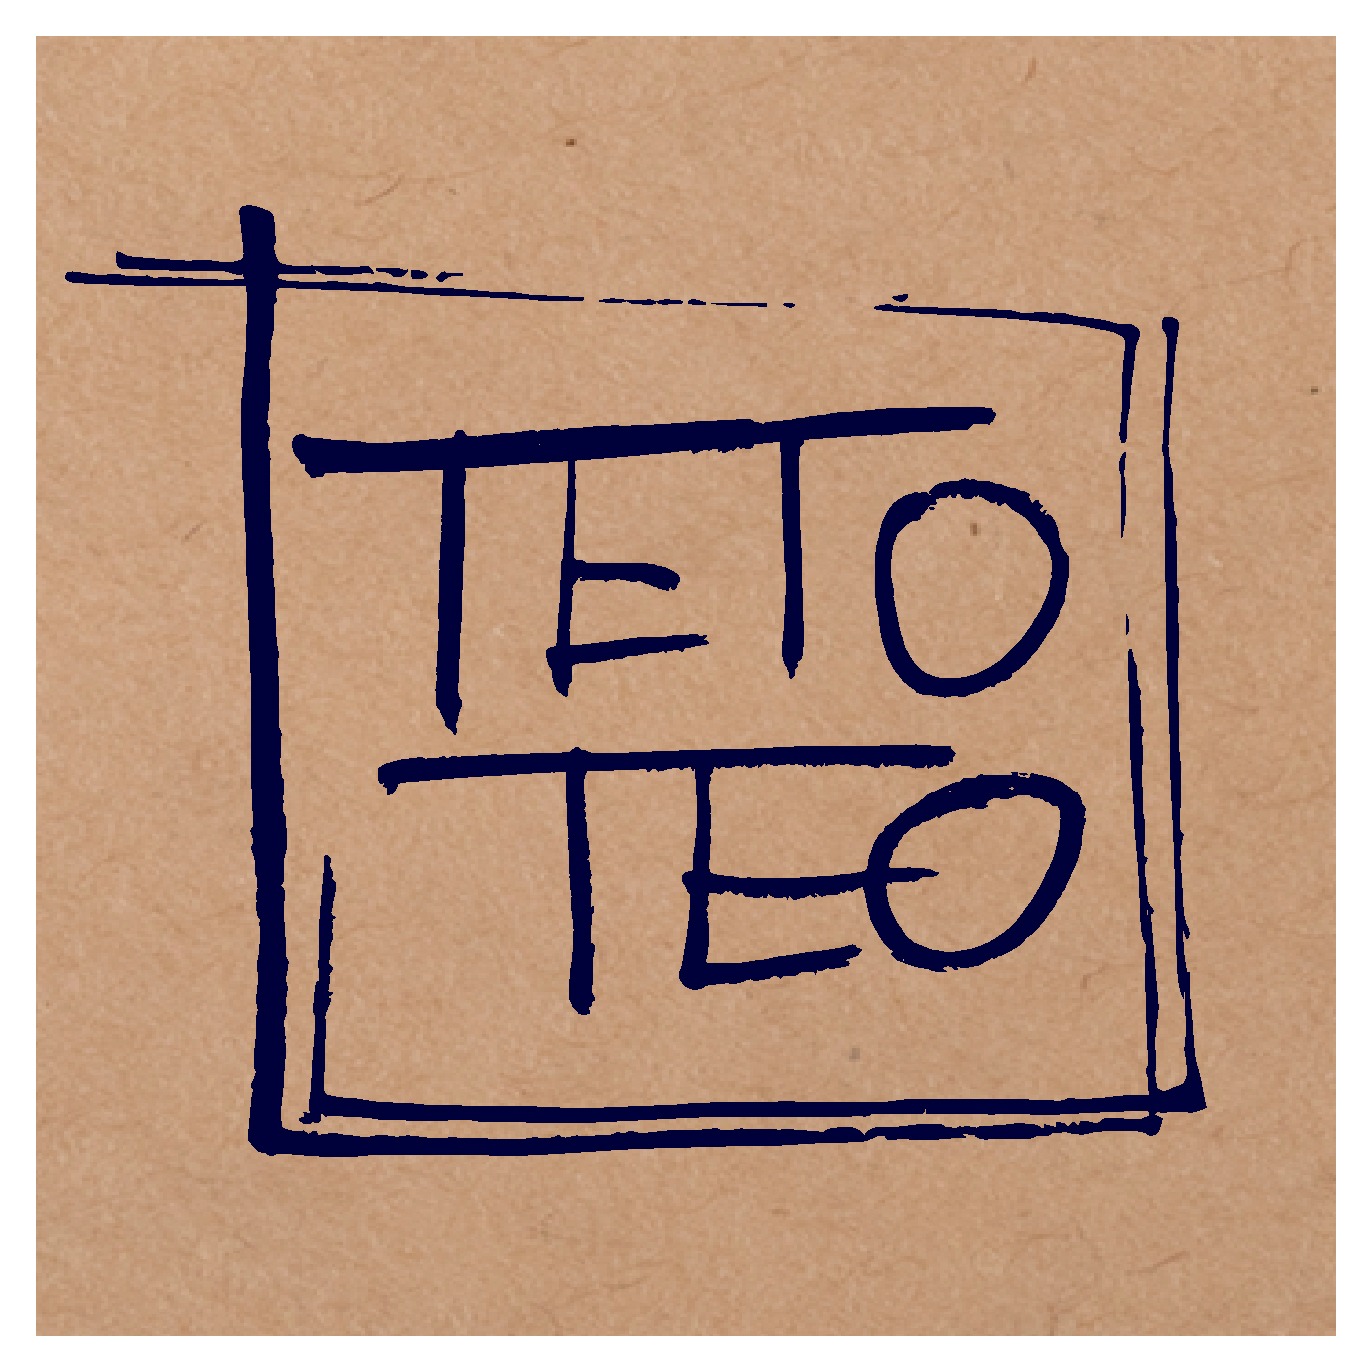 TETO-TEO EC SHOP